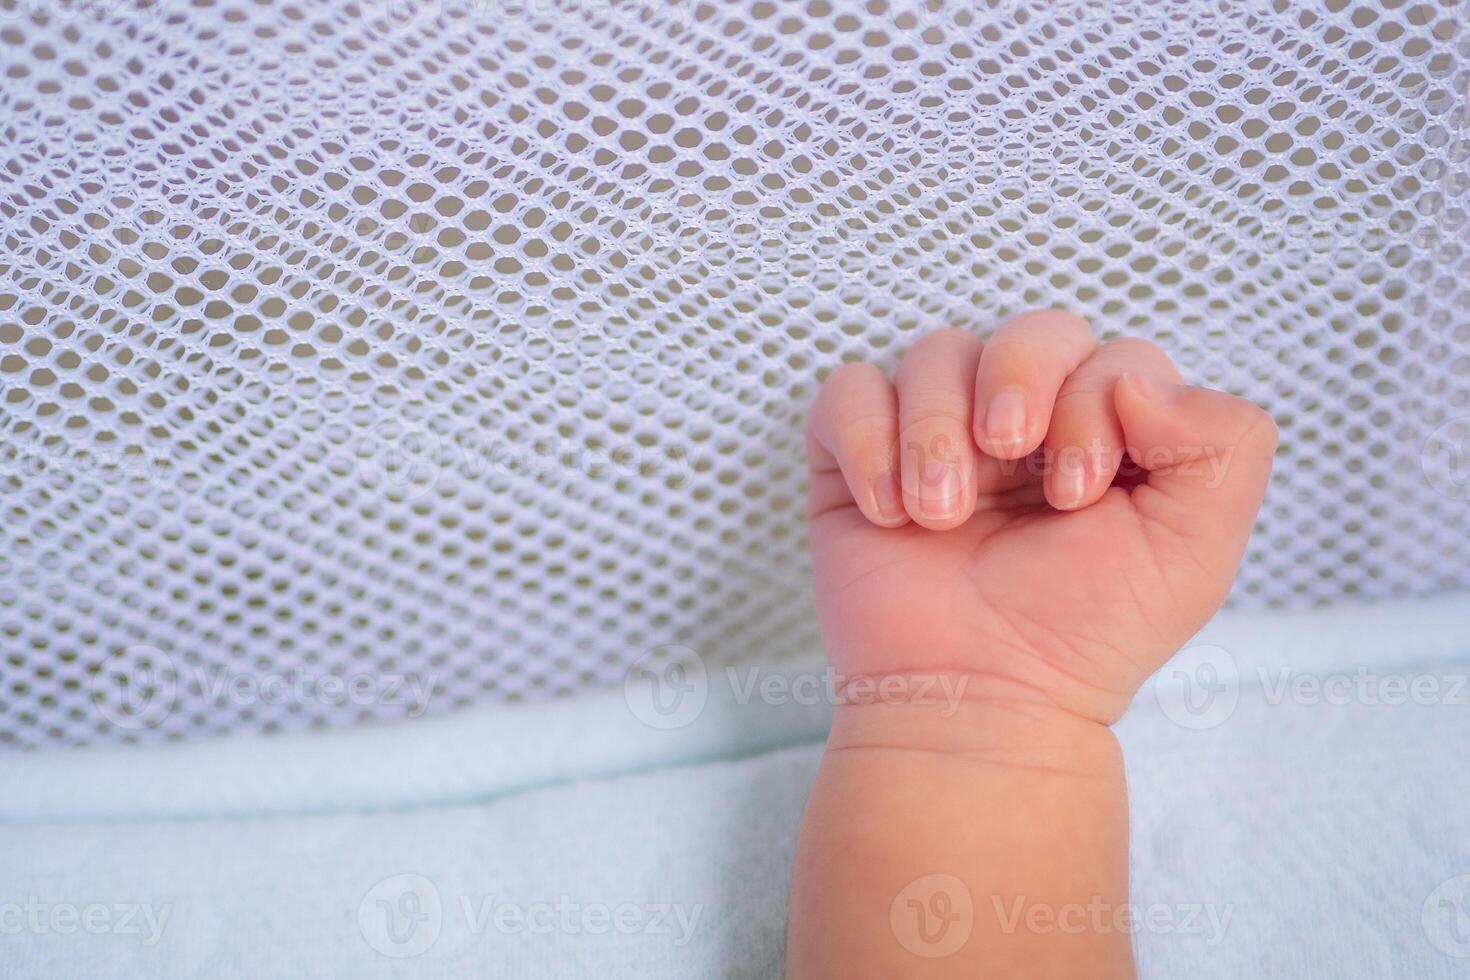 pequeno mão do recém-nascido bebê em uma branco cobertor foto